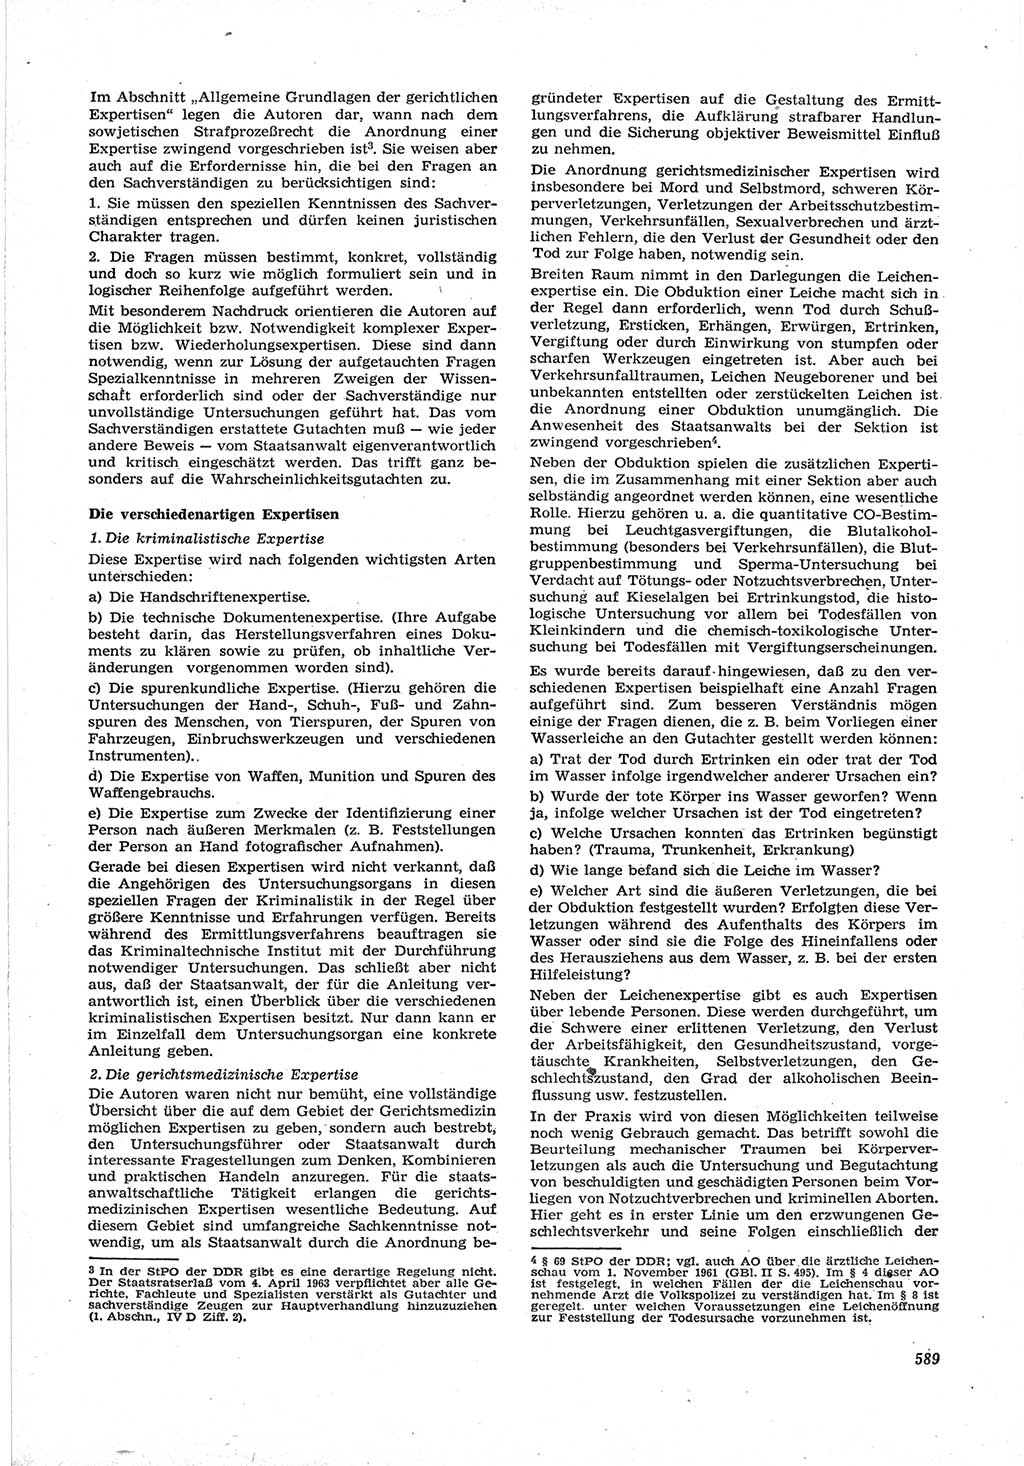 Neue Justiz (NJ), Zeitschrift für Recht und Rechtswissenschaft [Deutsche Demokratische Republik (DDR)], 17. Jahrgang 1963, Seite 589 (NJ DDR 1963, S. 589)